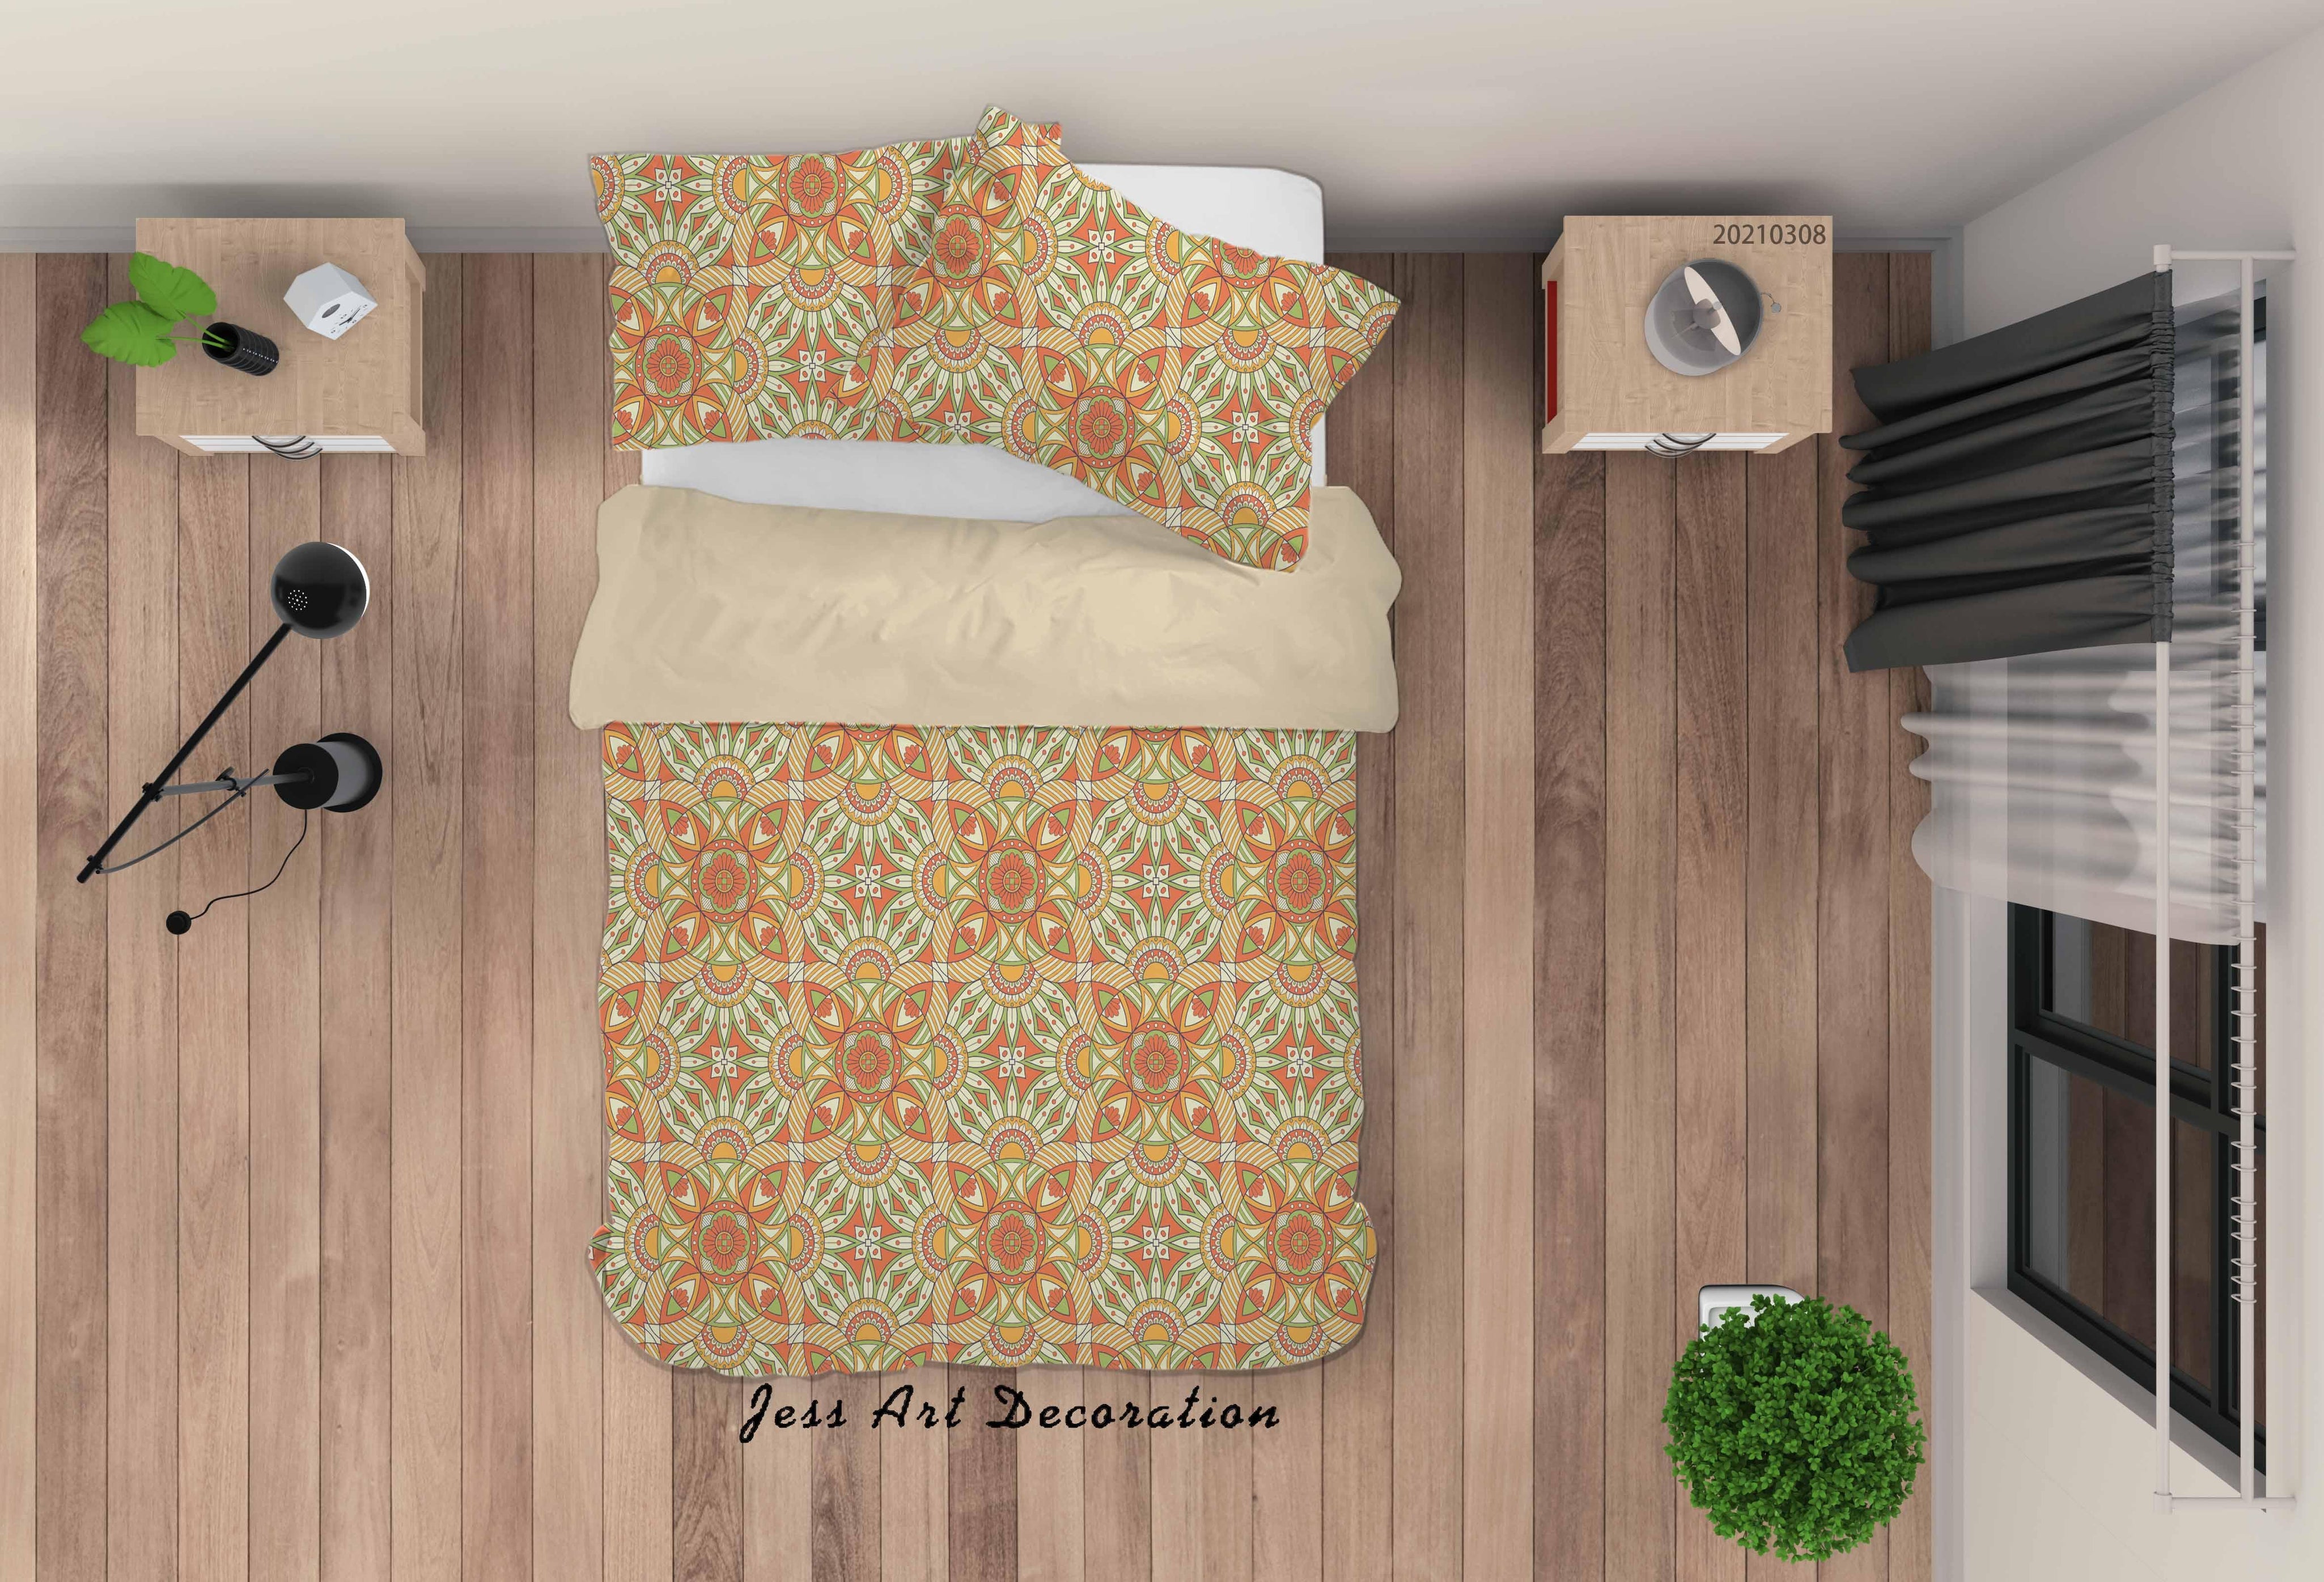 3D Abstract Color Floral Quilt Cover Set Bedding Set Duvet Cover Pillowcases 31- Jess Art Decoration